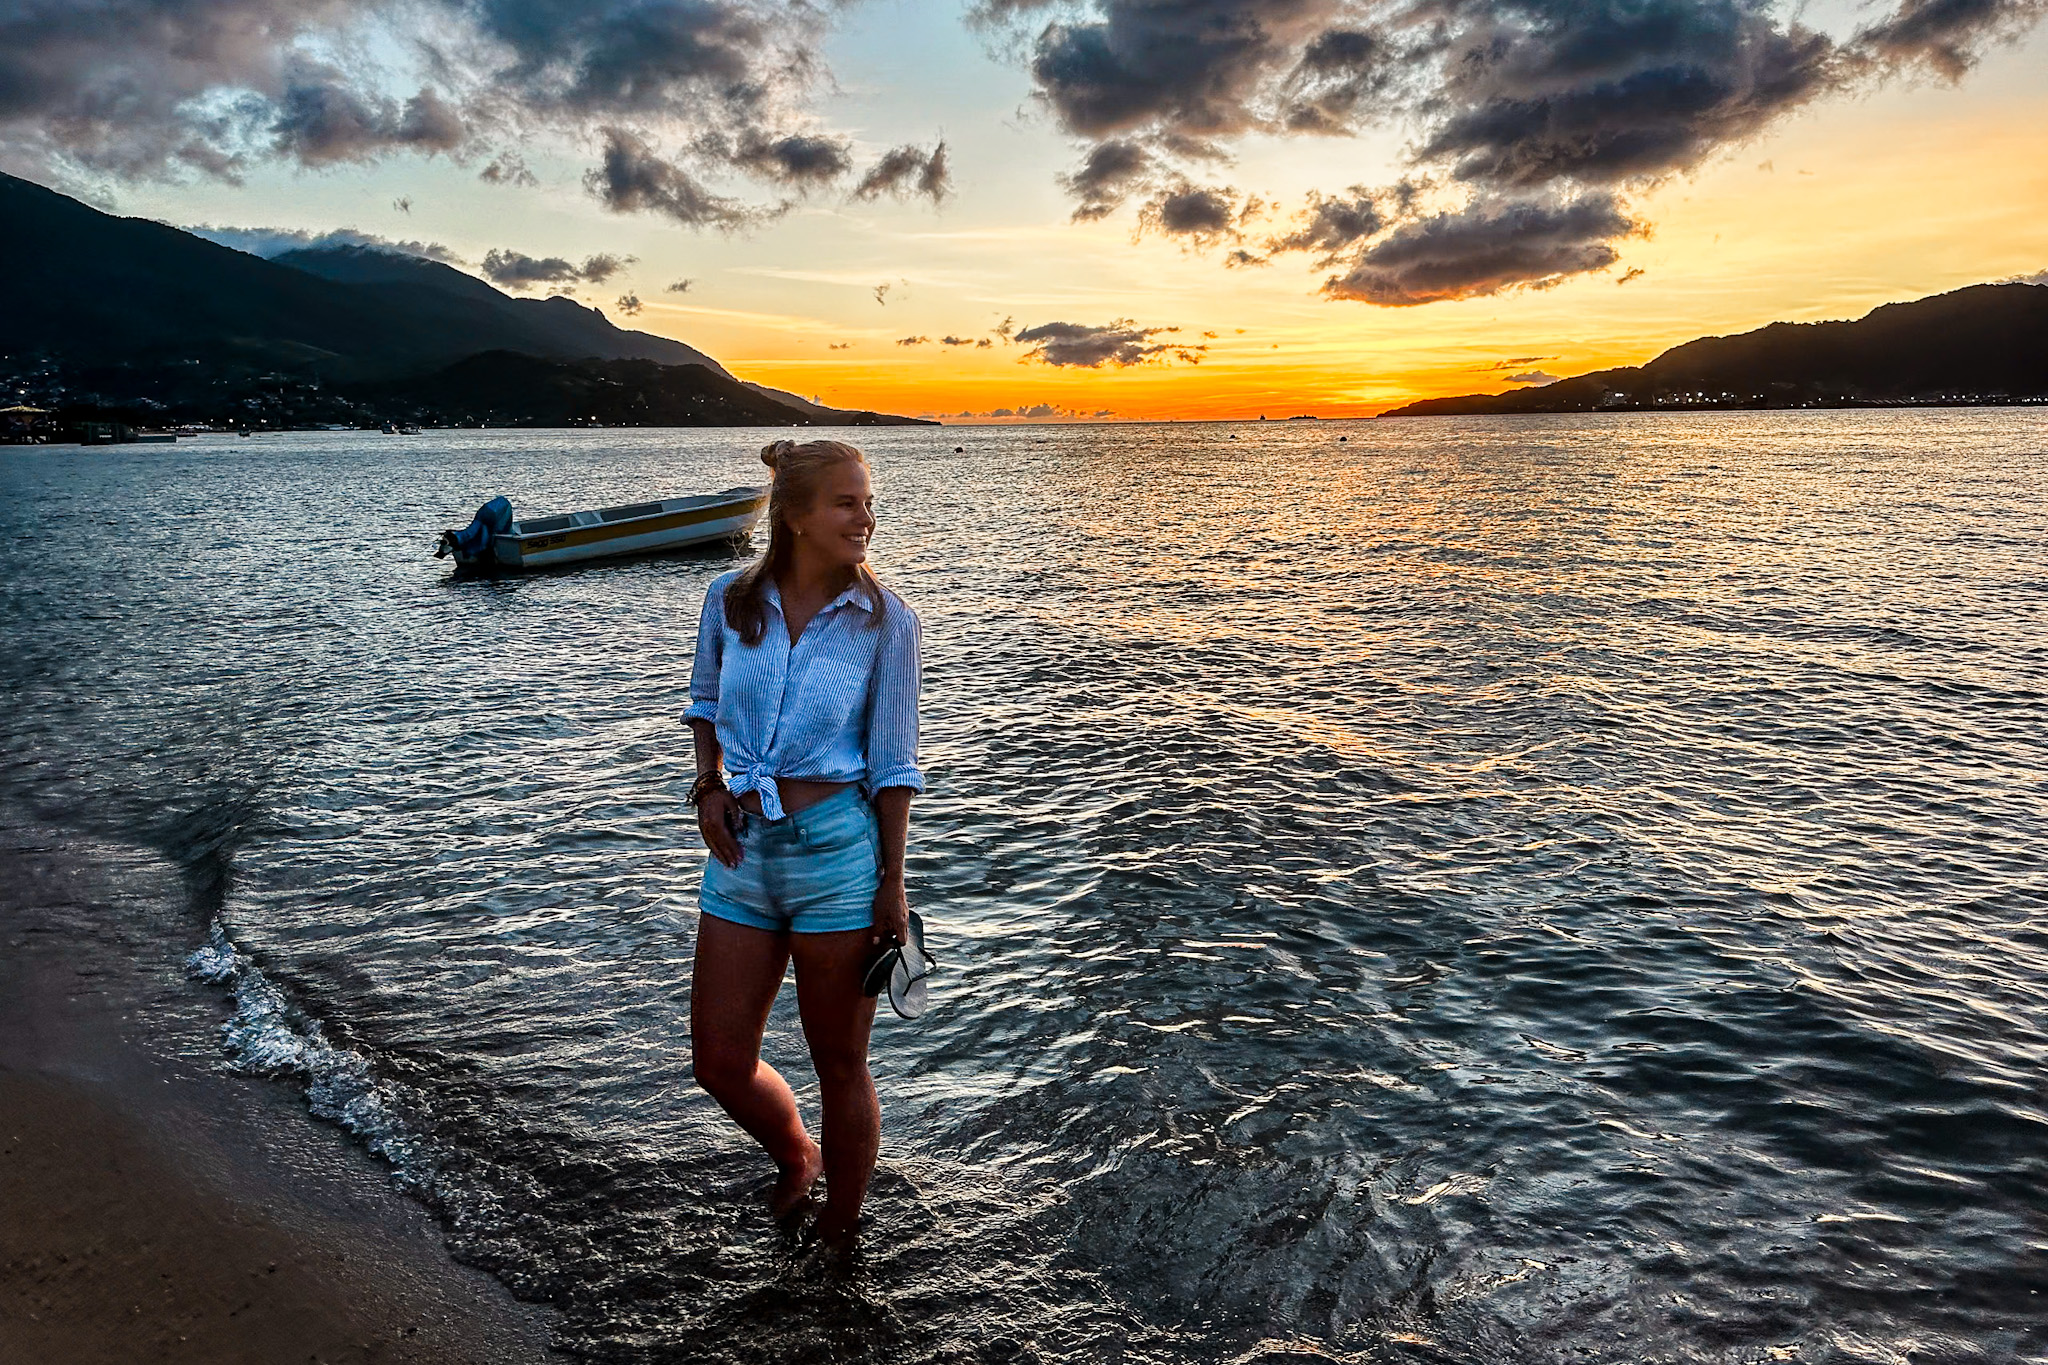 Ilhabela Travel Guide: Watch a beautiful sunset